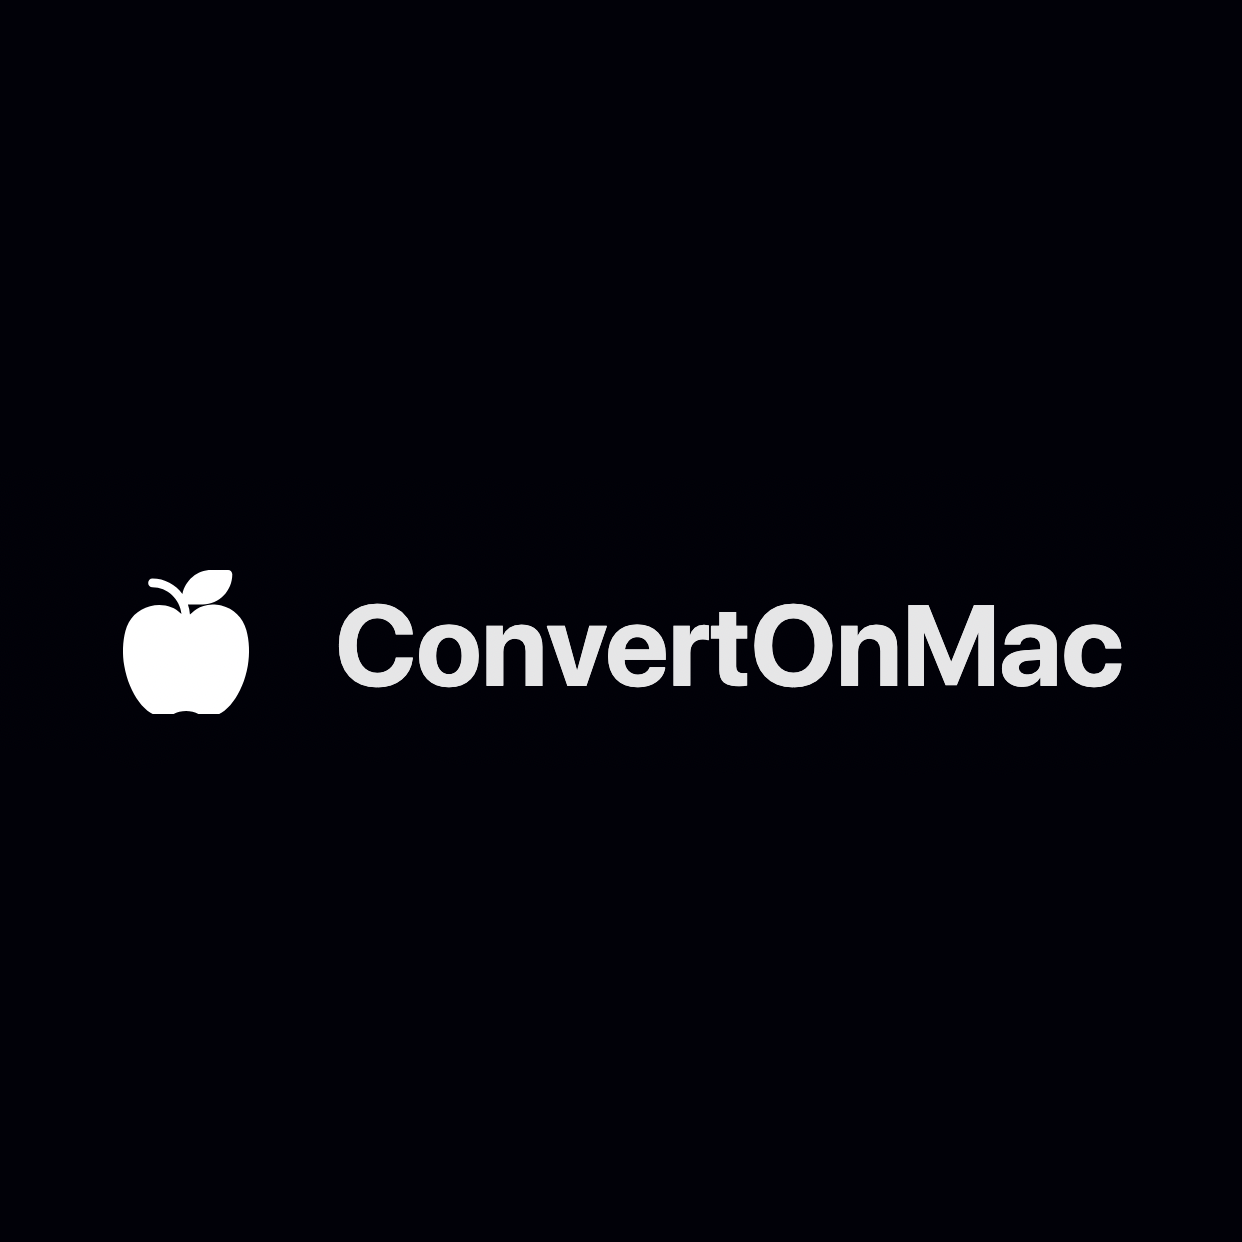 ConvertOnMac